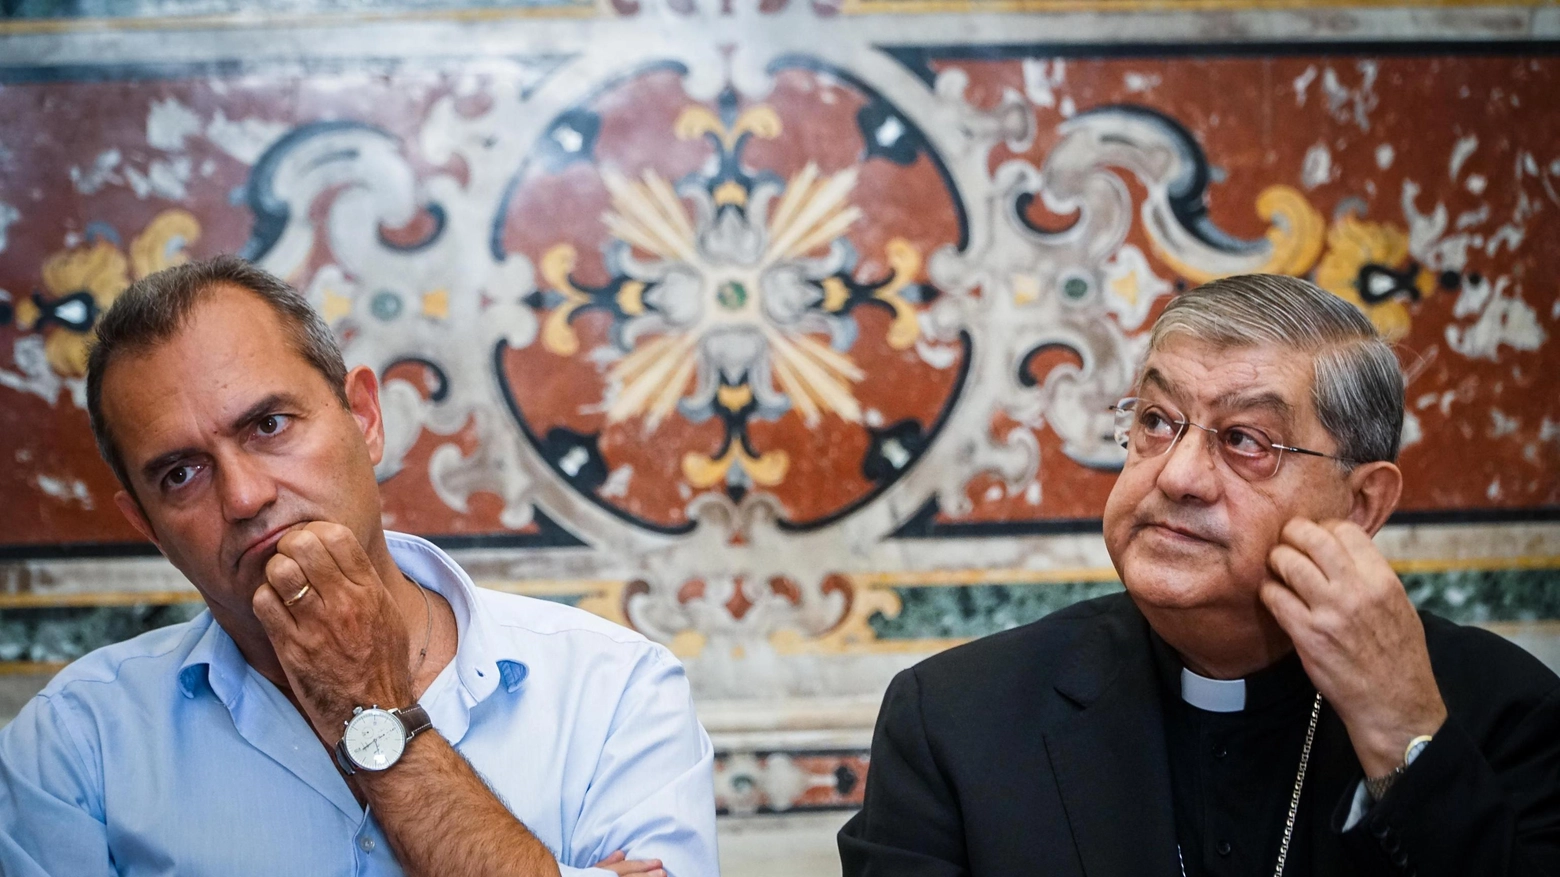 Napoli, vescovo Battaglia e de Magistris incontrano Sepe al Duomo